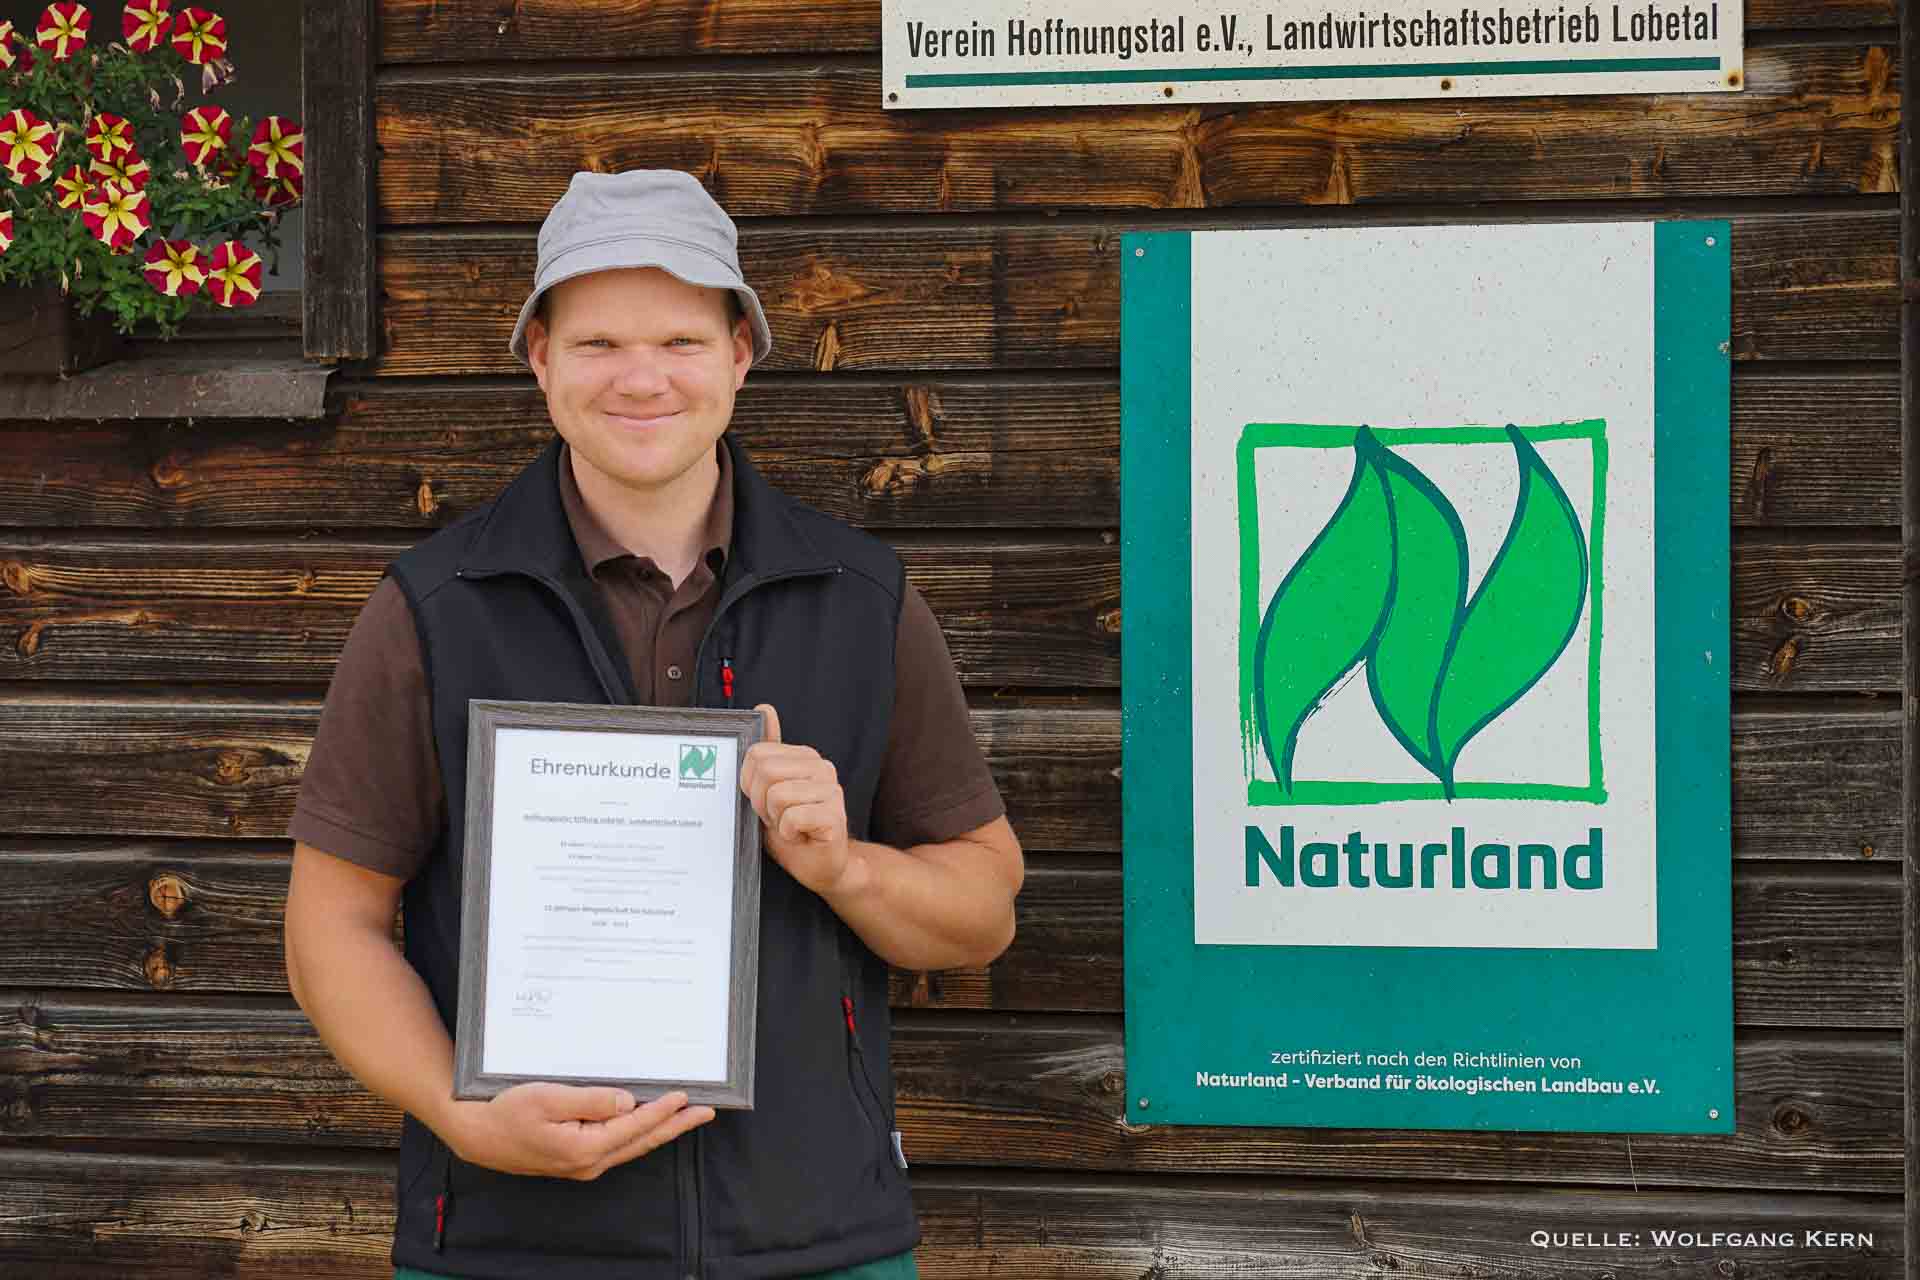 15 Jahre Naturland-Mitgliedschaft - Ehrung und Dank für die Lobetaler Landwirtschaft